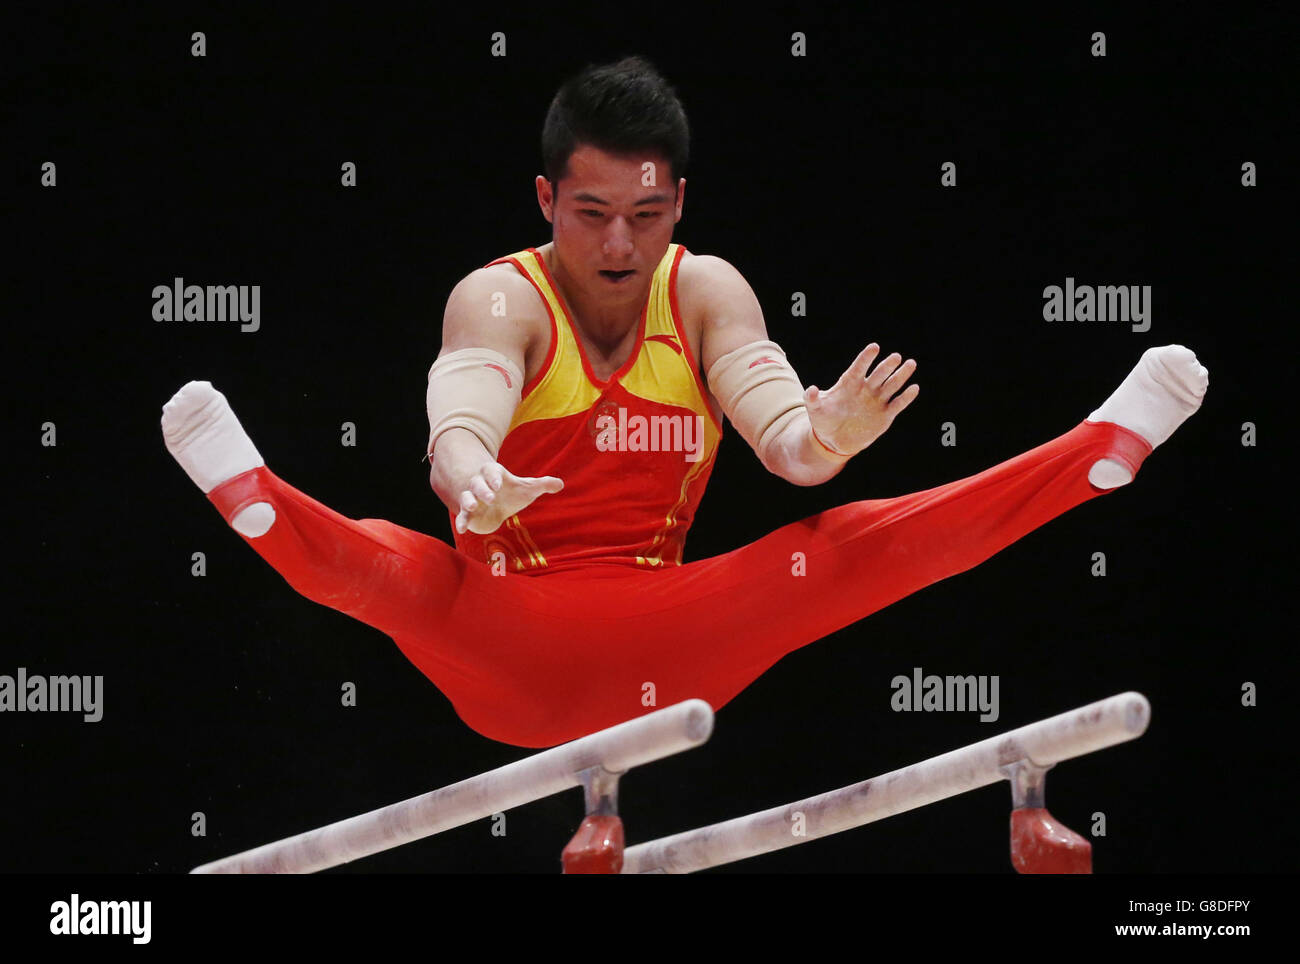 Gymnastik - Weltmeisterschaften 2015 - Tag drei - das SSE Hydro. Shudi Deng aus China tritt am dritten Tag der Weltmeisterschaften im Gymnastik 2015 bei der SSE Hydro, Glasgow, an den parallelen Riegel an. Stockfoto